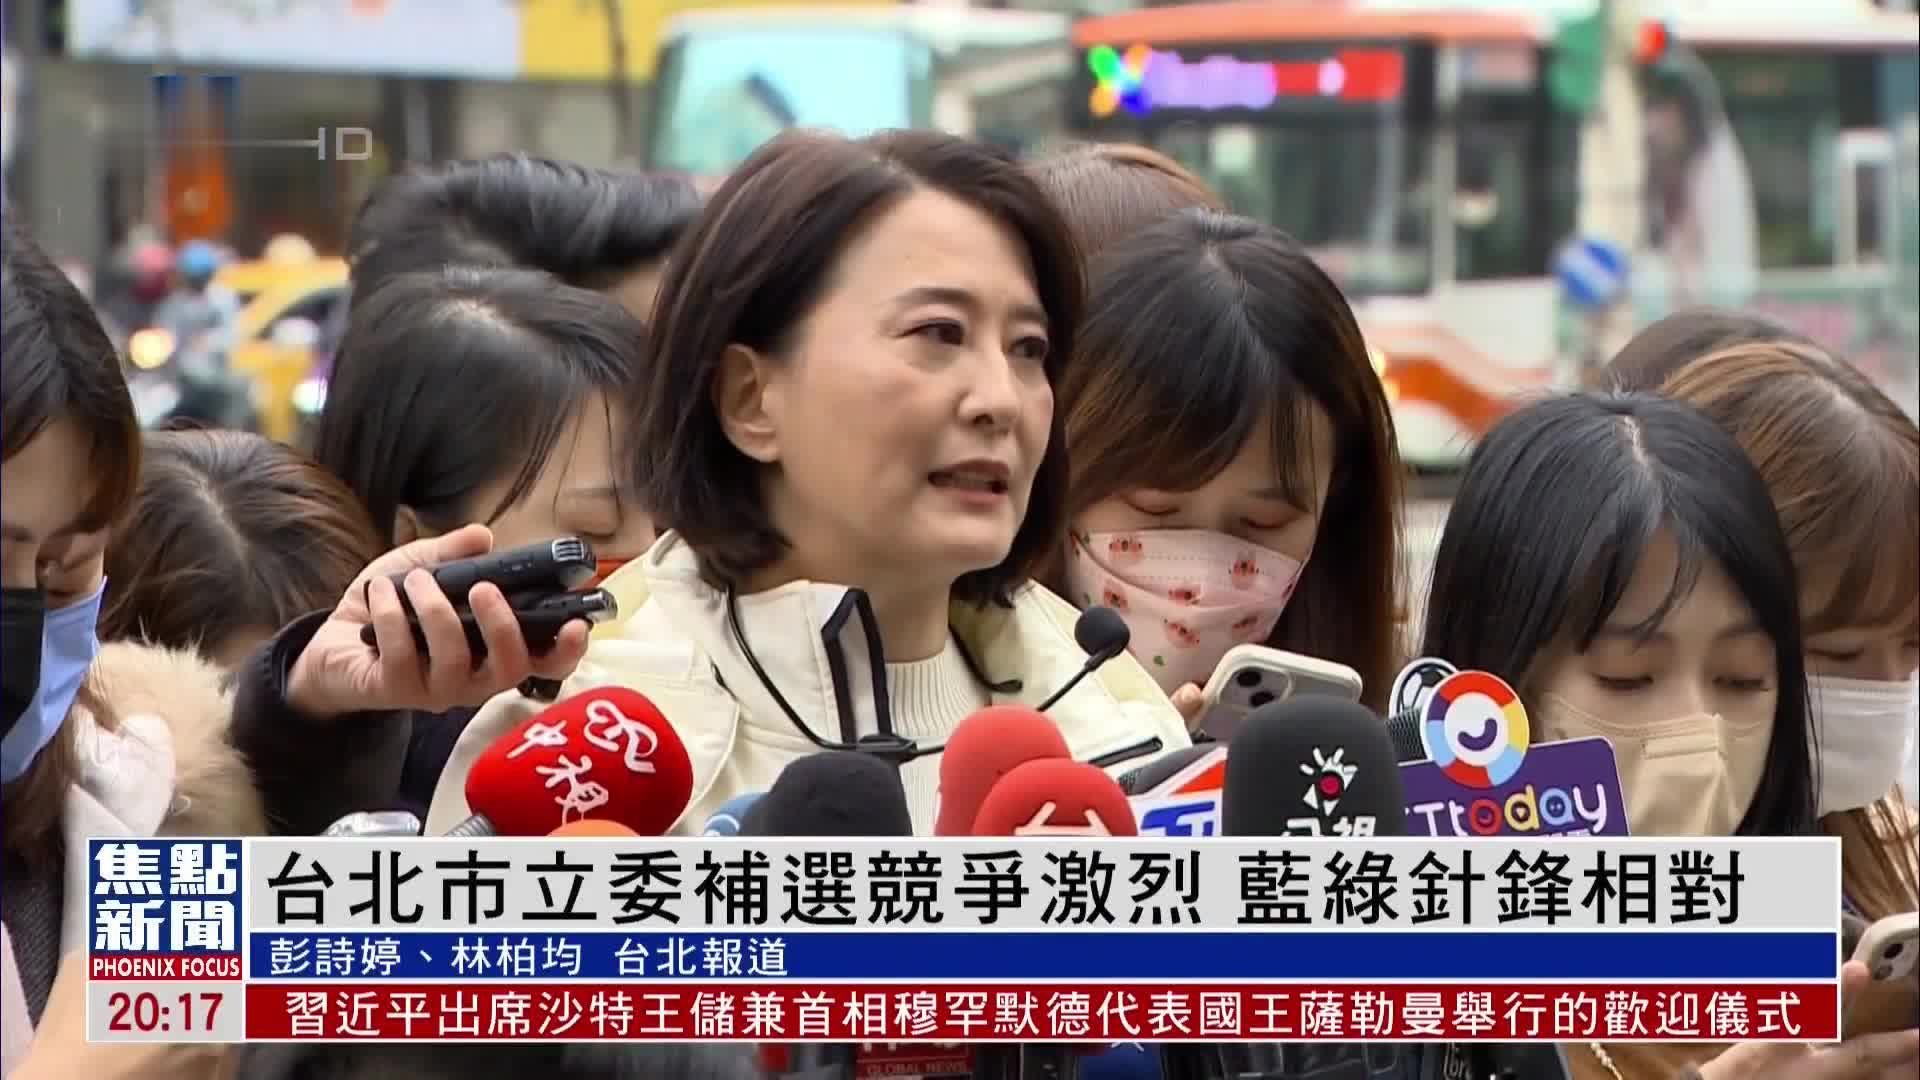 台北市立委补选竞争激烈 国民党与民进党针锋相对